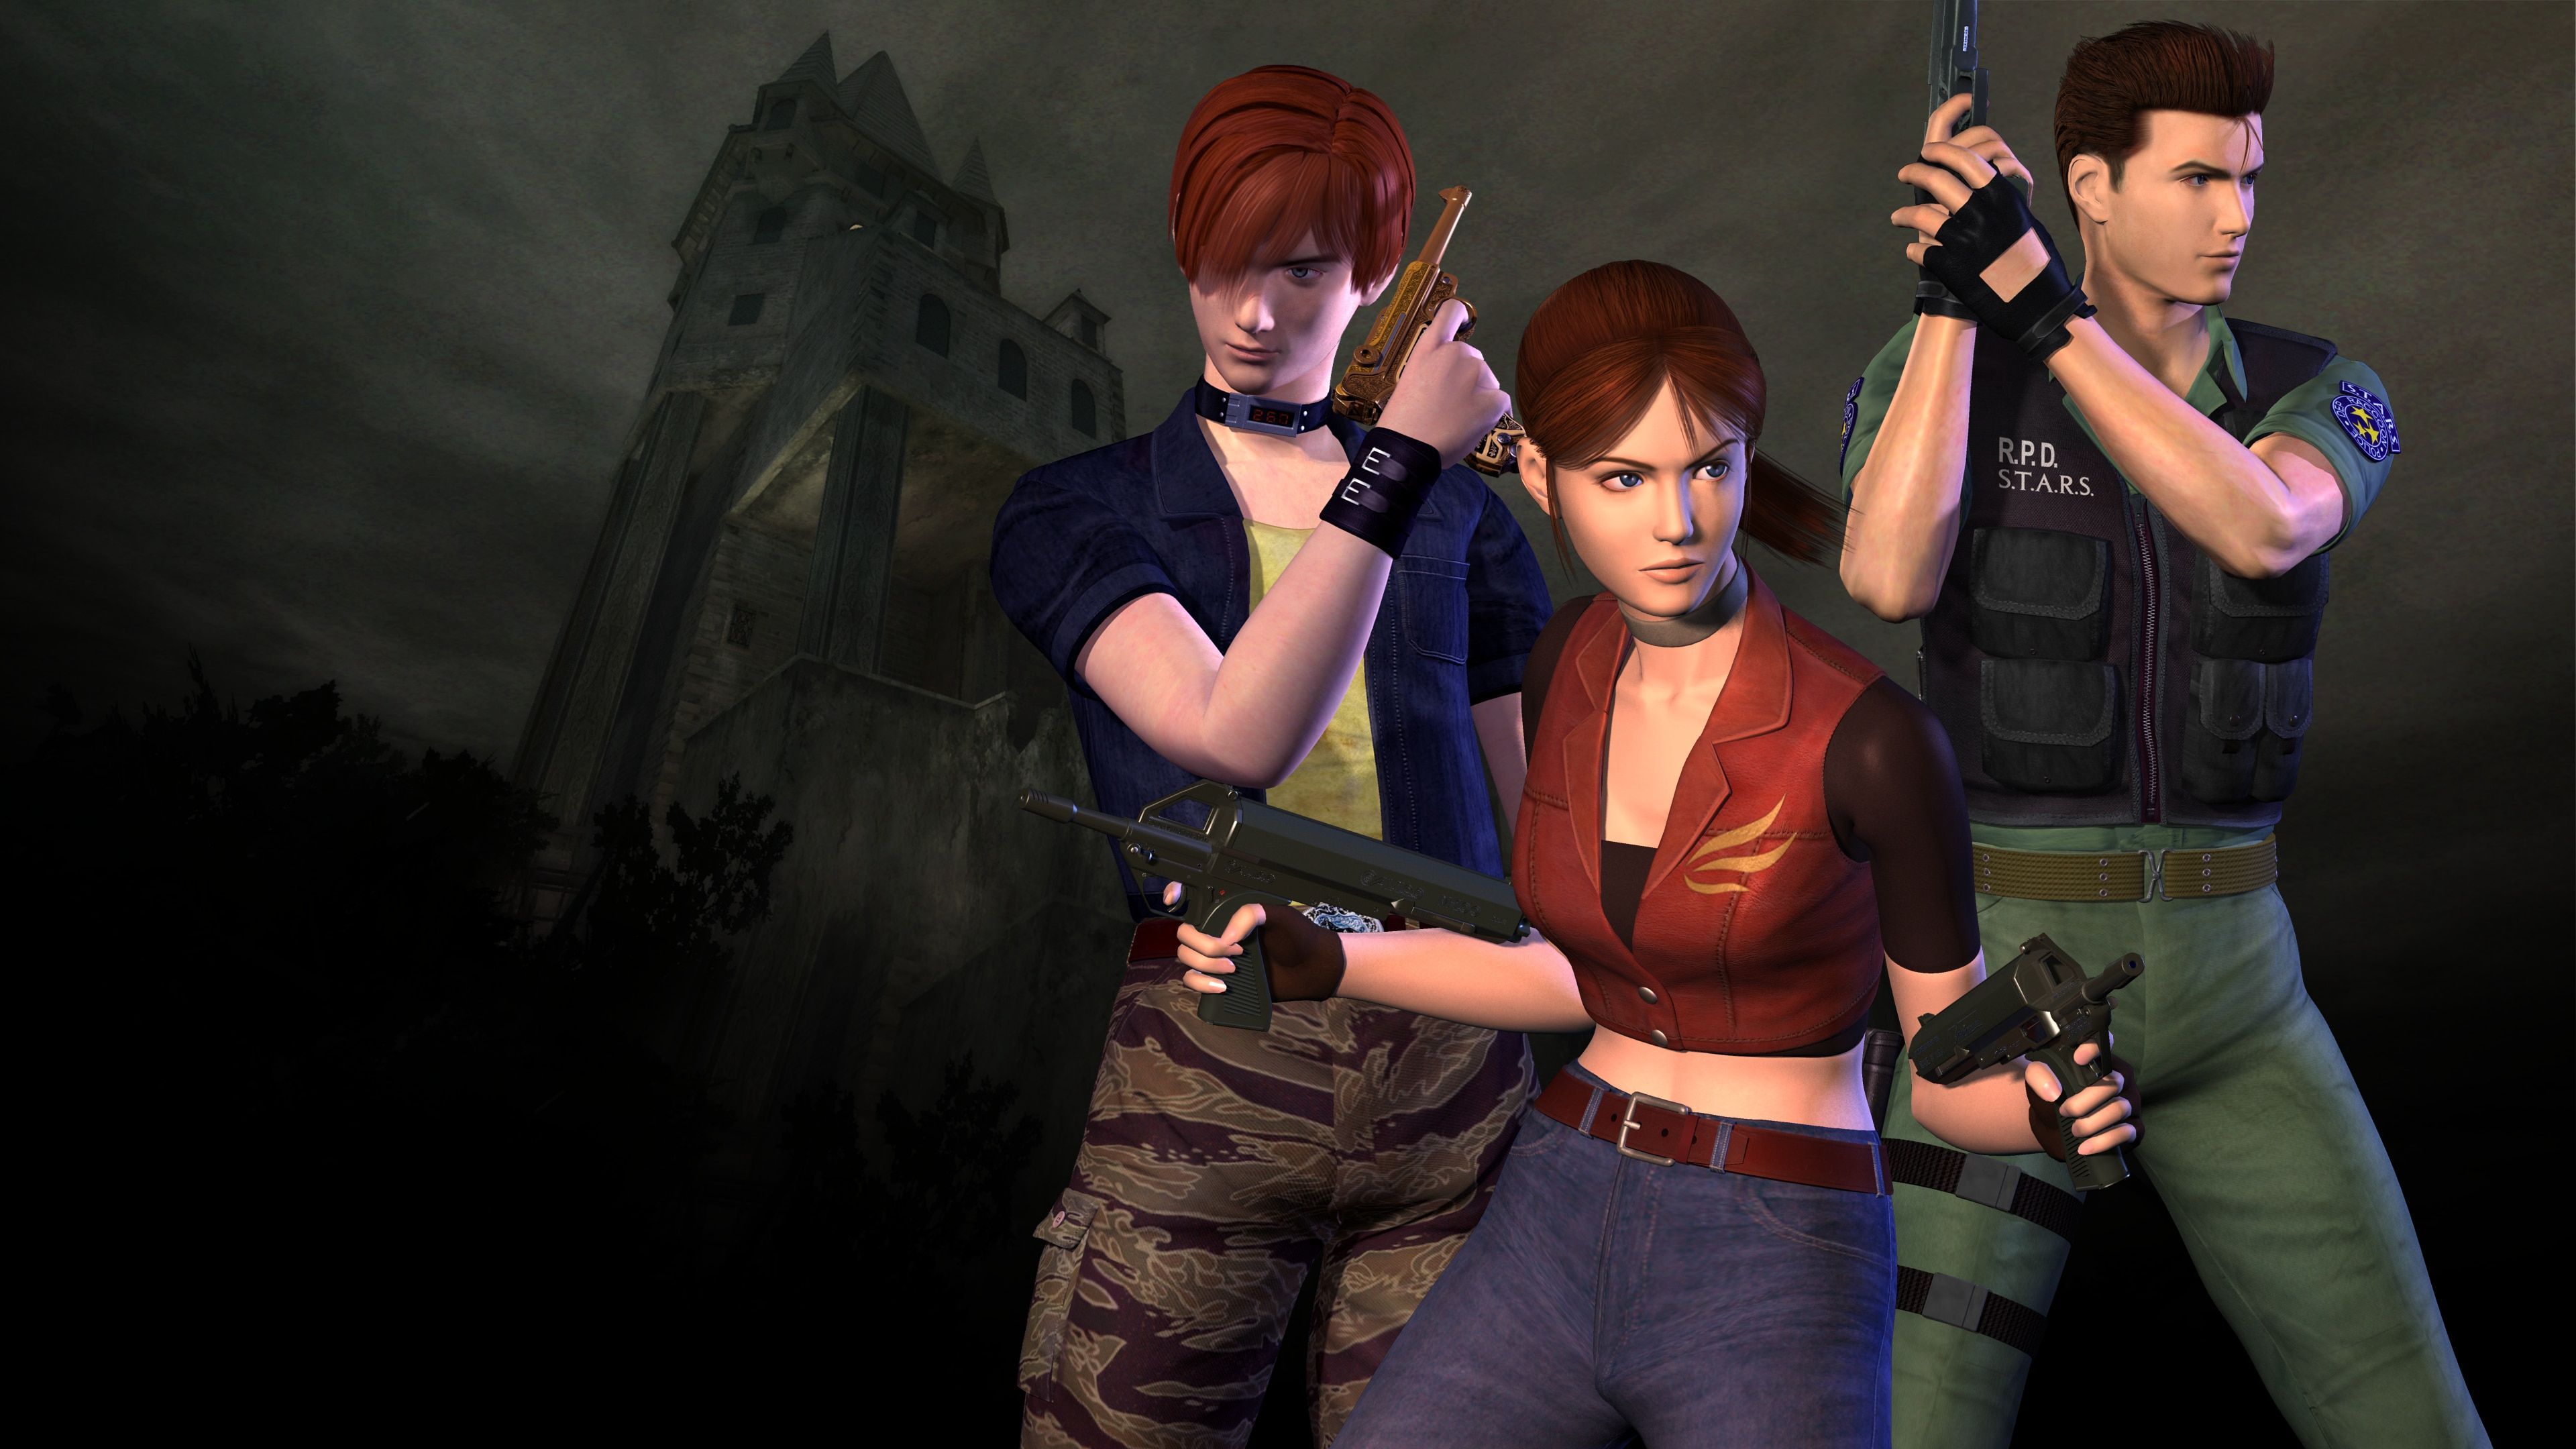 The Resident Evil Timeline - From Resident Evil 1 to Resident Evil 3 